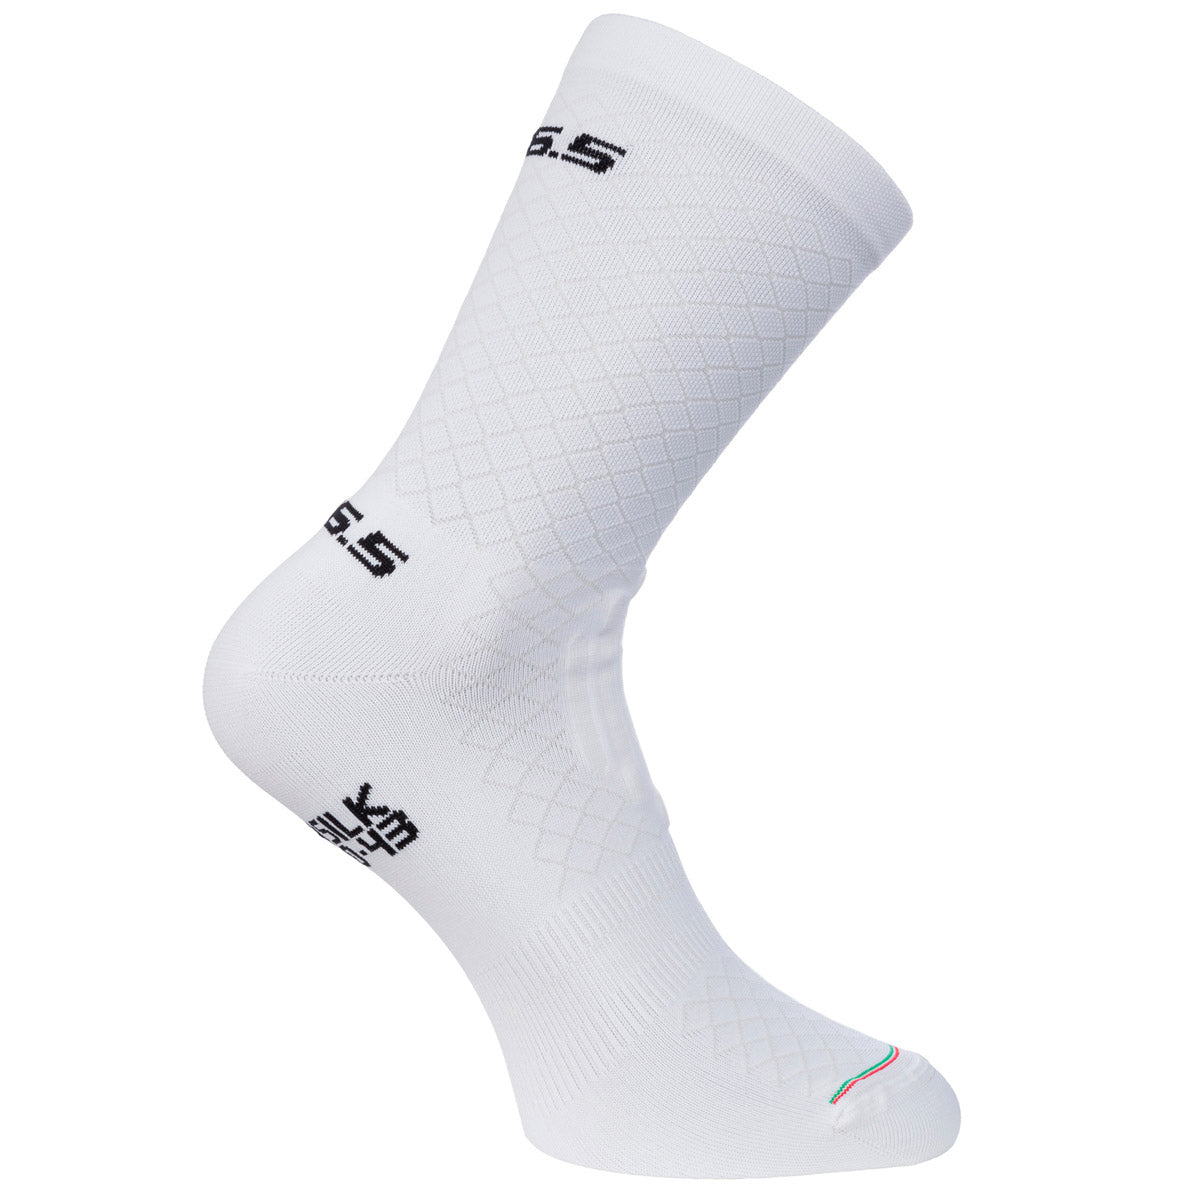 Q36.5 Leggera socks - White | All4cycling